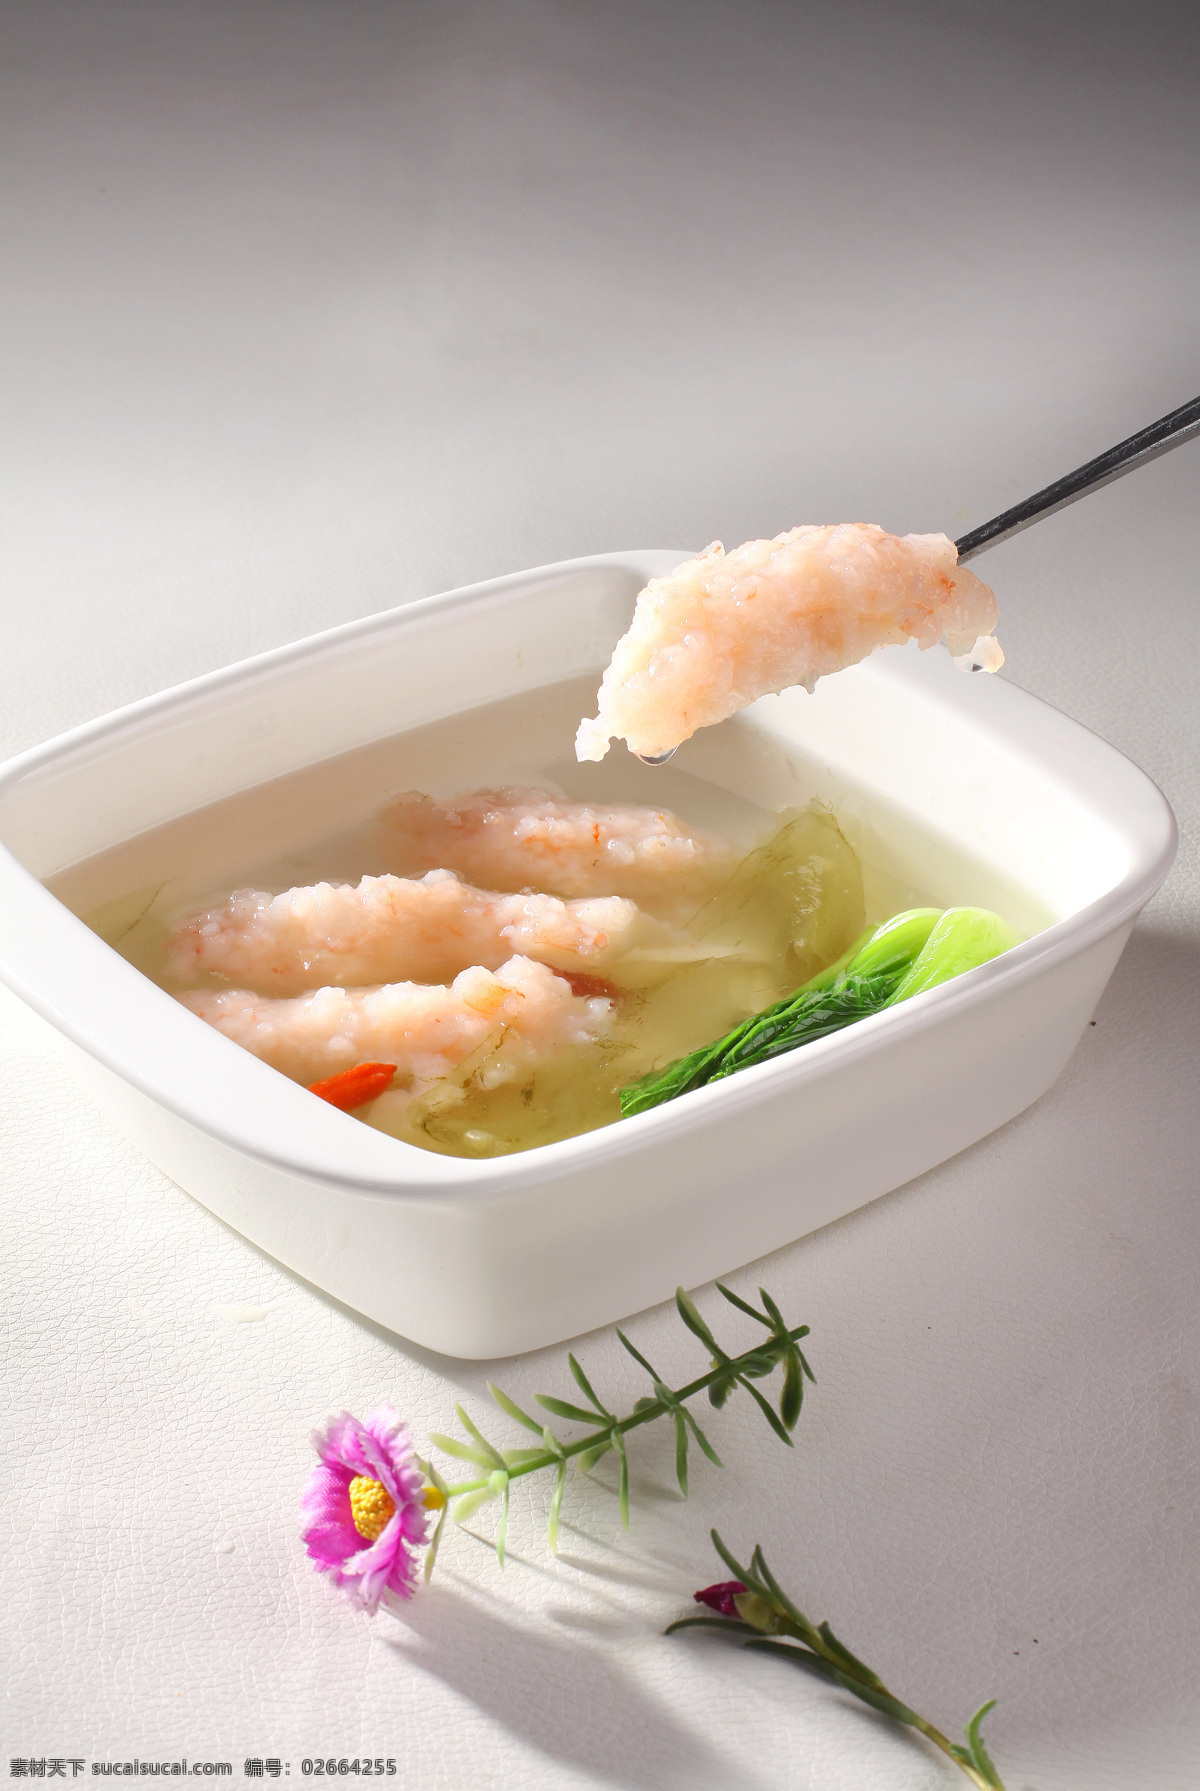 养生鲜虾滑 养生 鲜虾滑 特色 美味 风味 极品 自制 秘制 菜品图 餐饮美食 传统美食